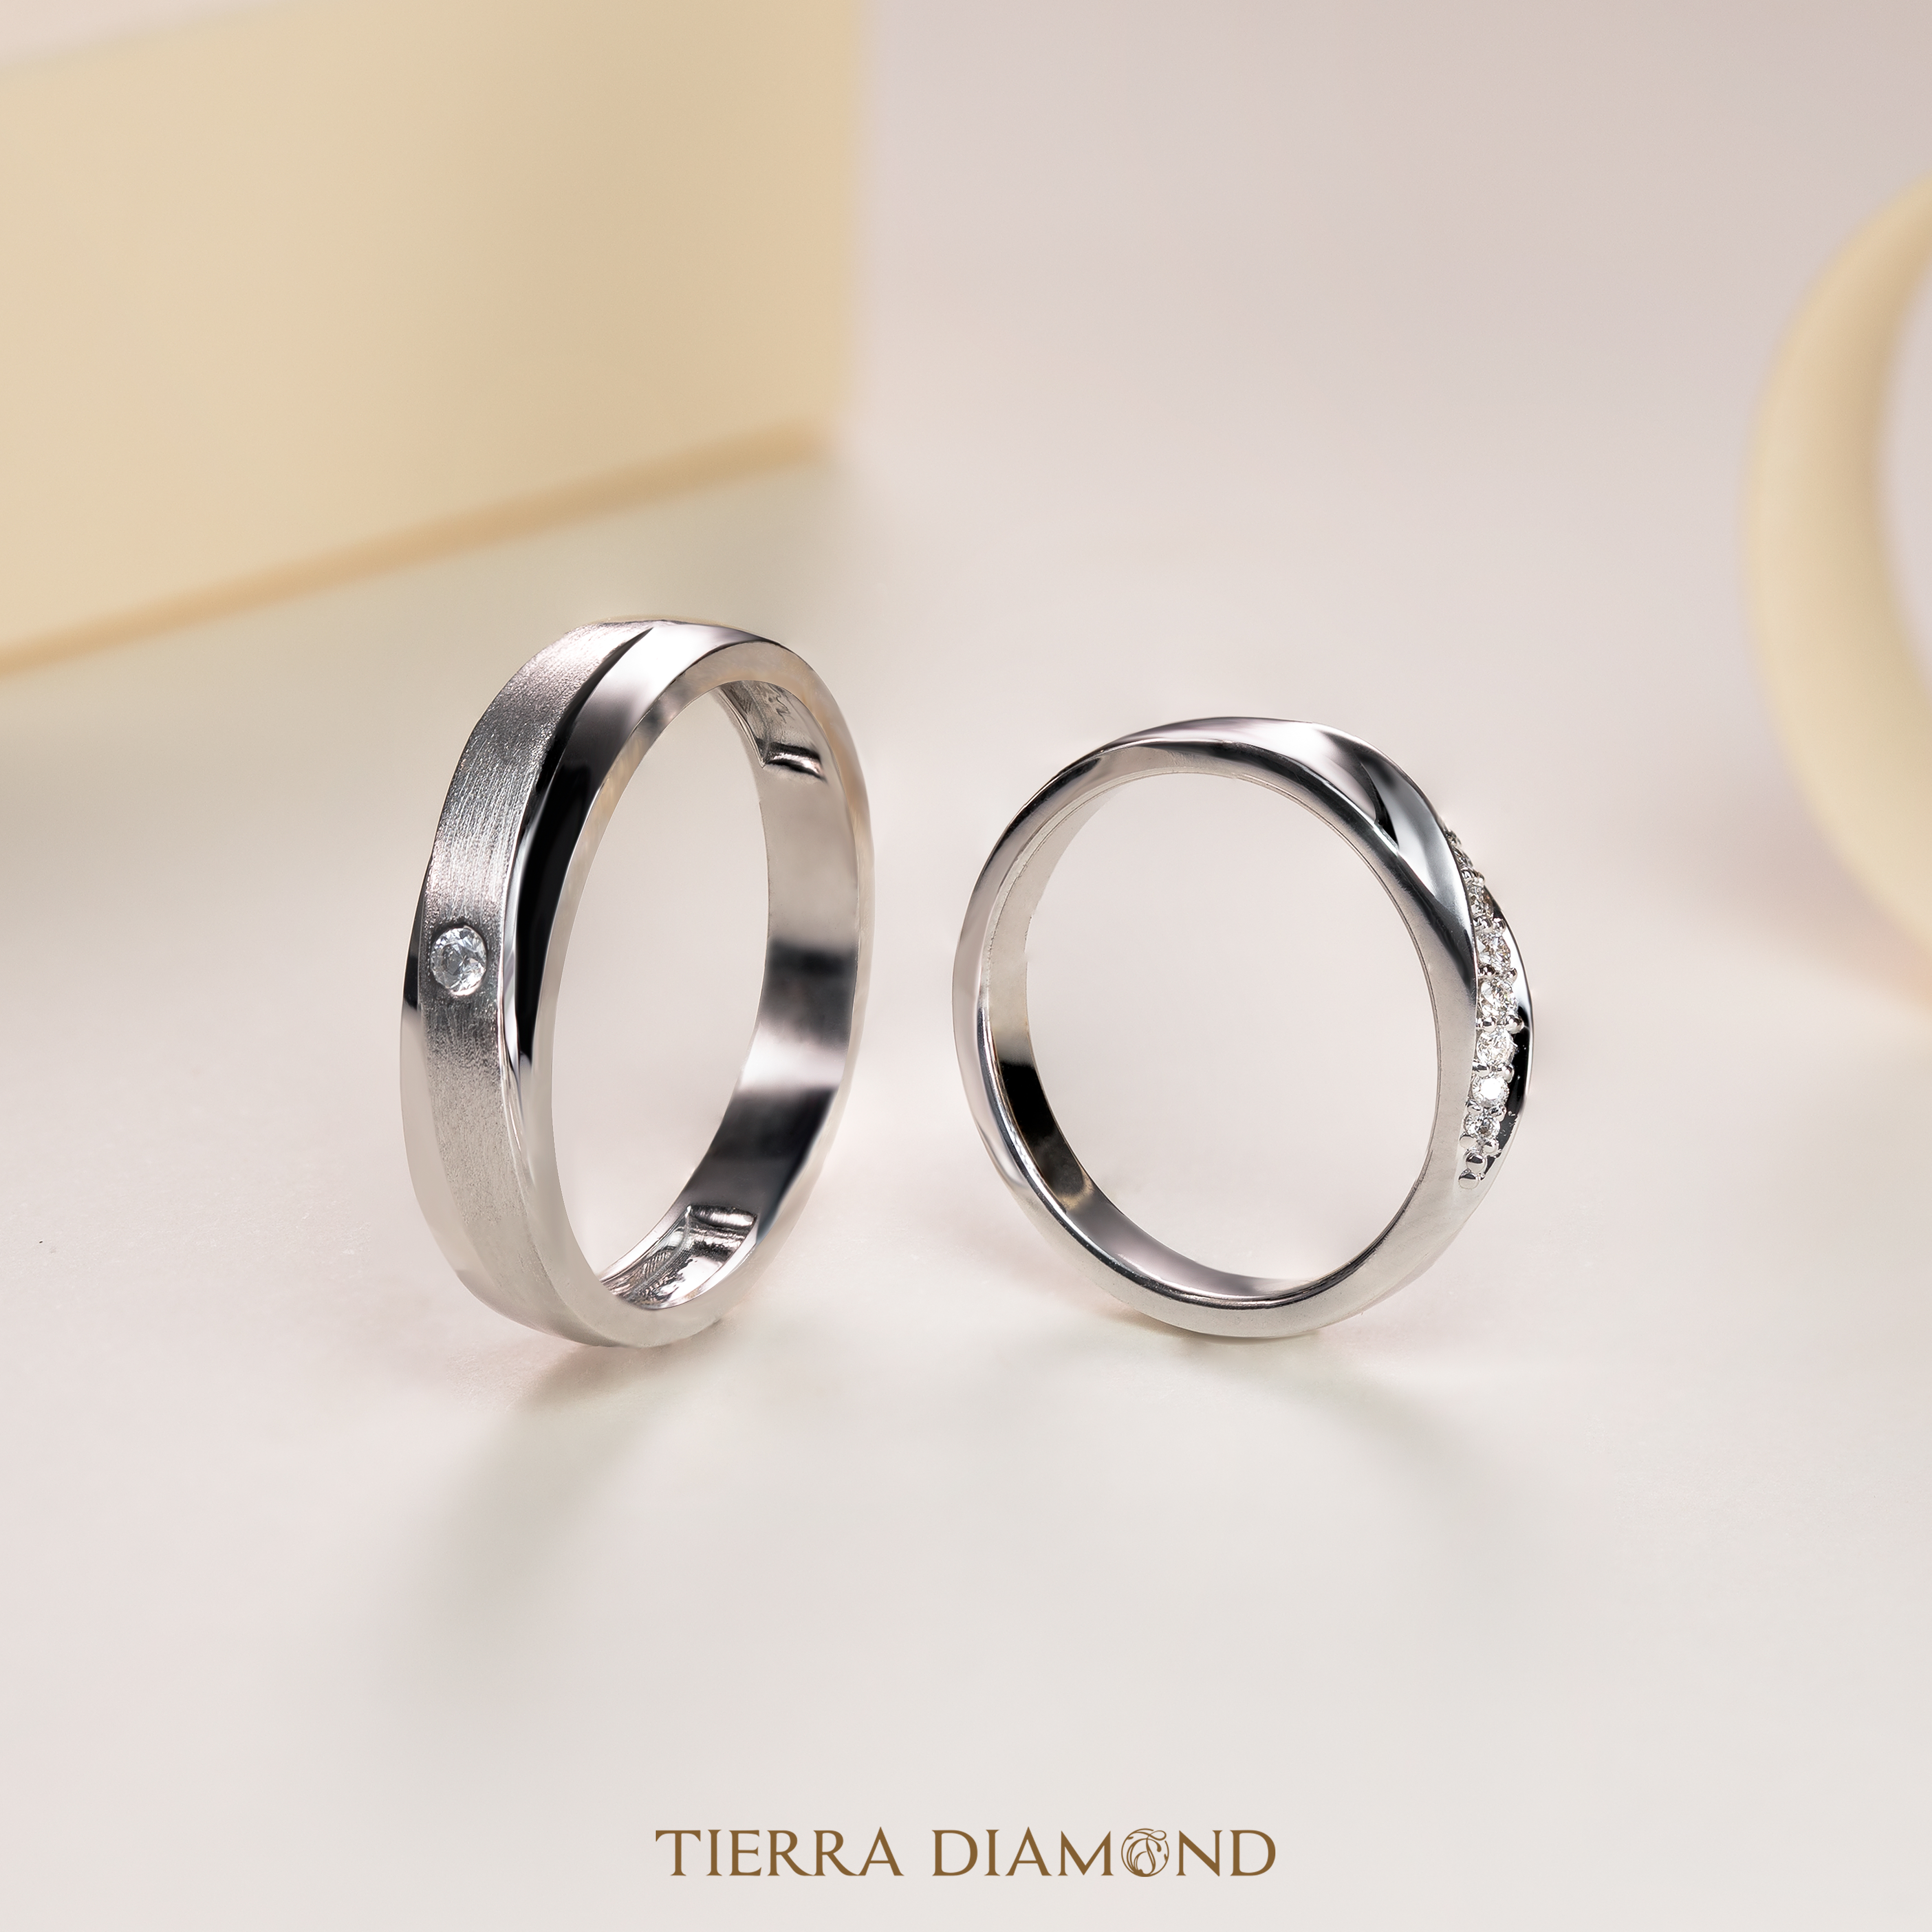 Nhẫn cưới thiết kế, khắc tên theo yêu cầu - Vẻ đẹp hạnh phúc độc đáo - 3.jpg